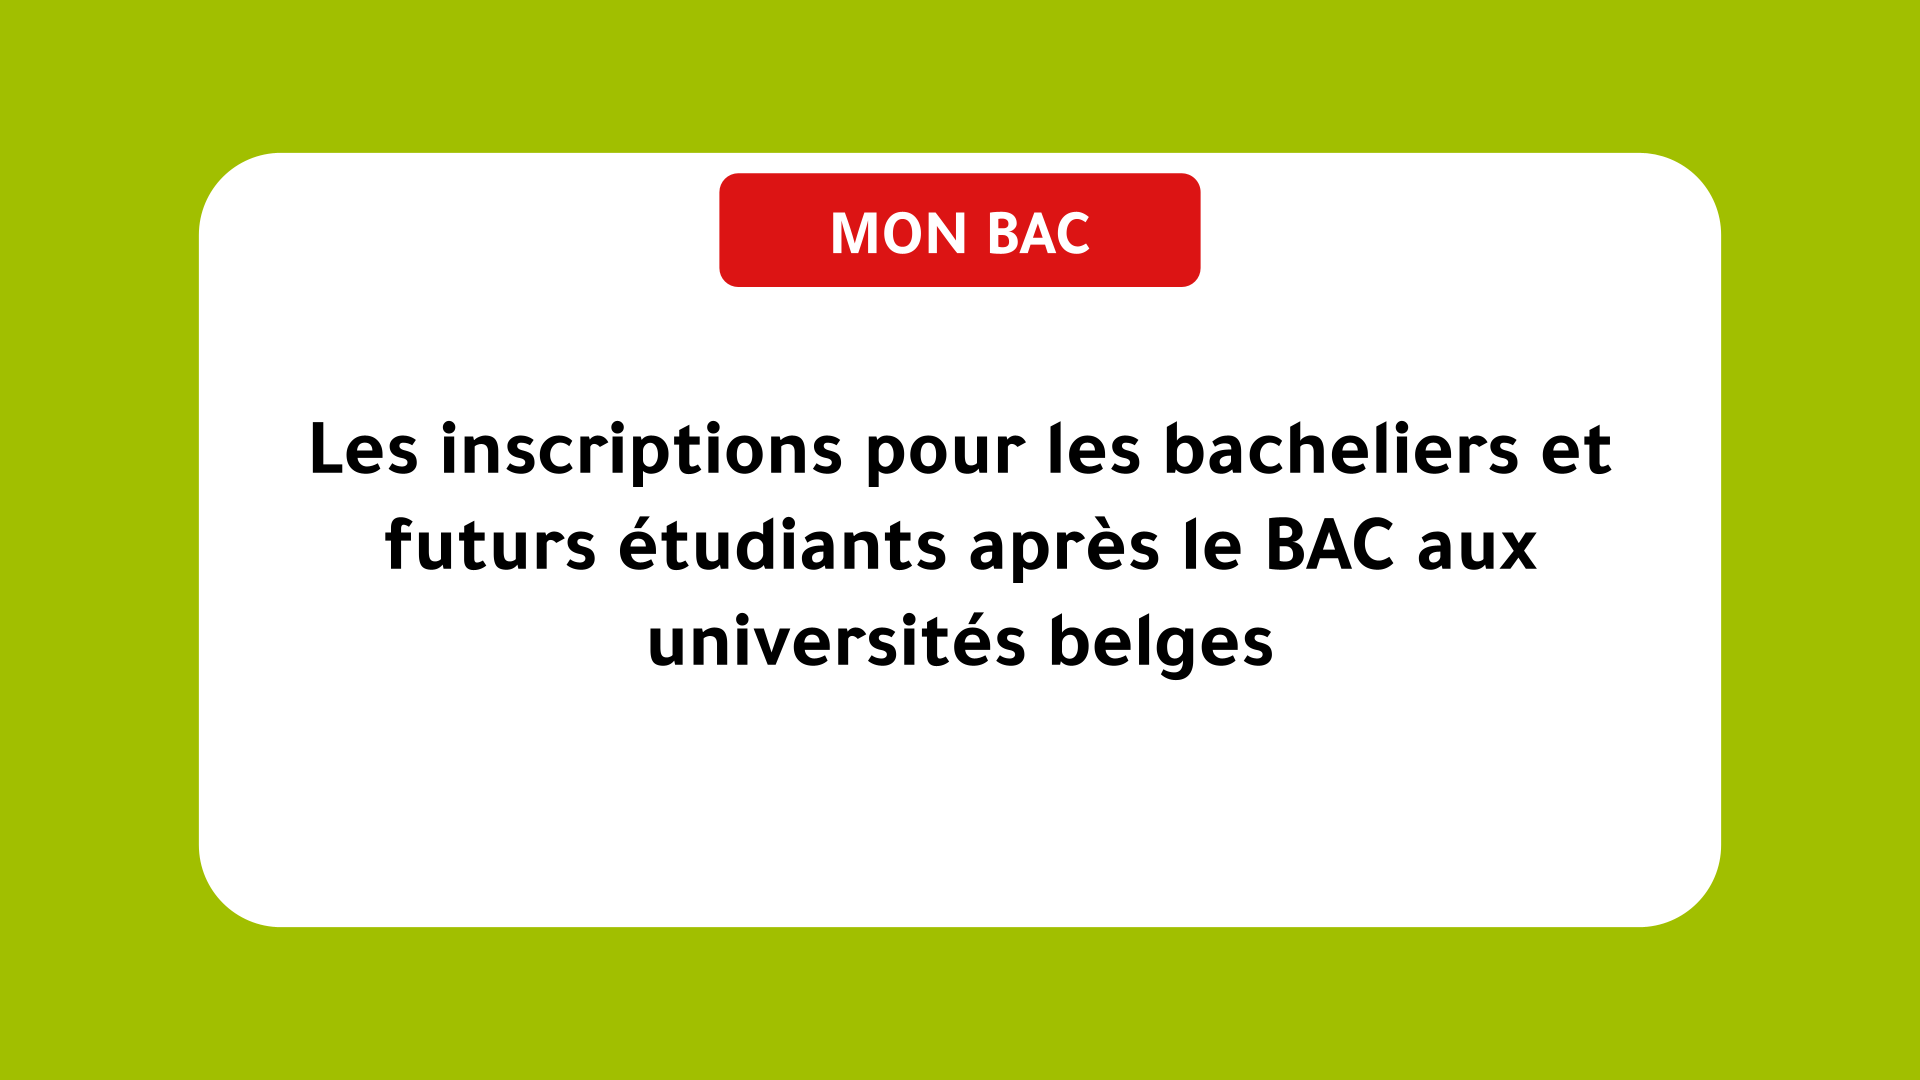 Les inscriptions pour les bacheliers et futurs étudiants après le BAC aux universités belges